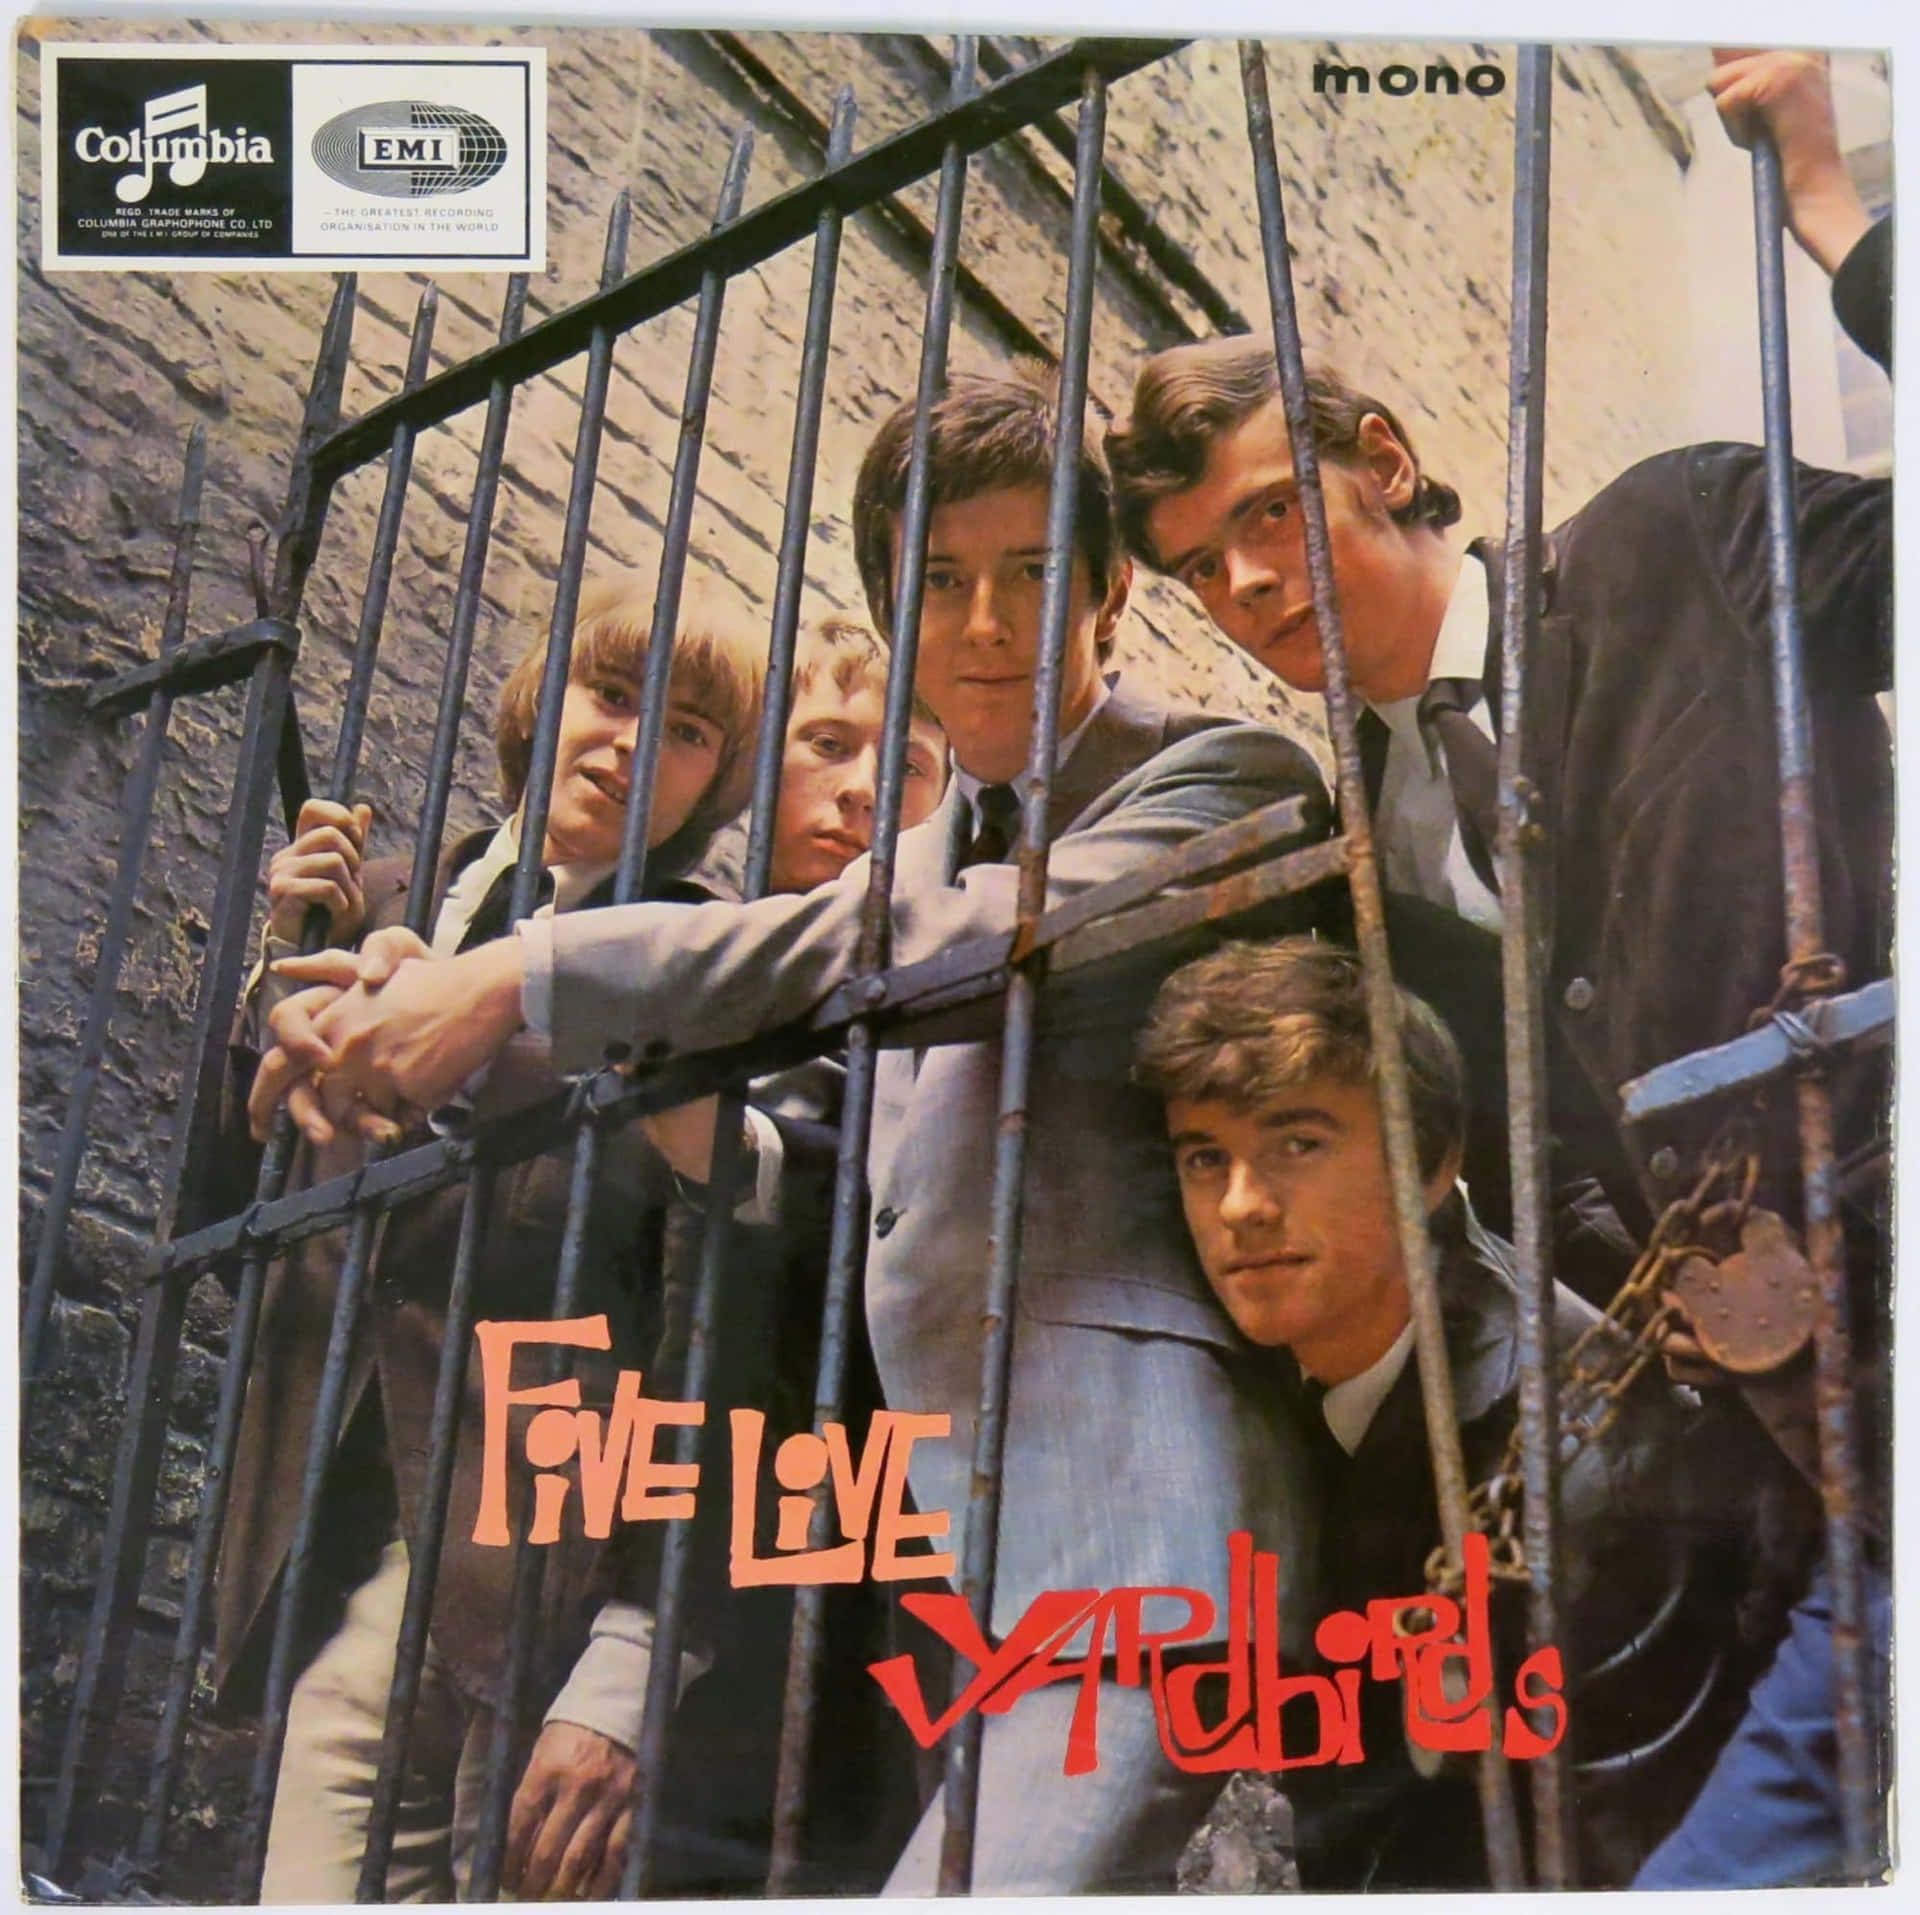 Fem Live Yarbirds Vinyl Cover som baggrundsbillede. Wallpaper